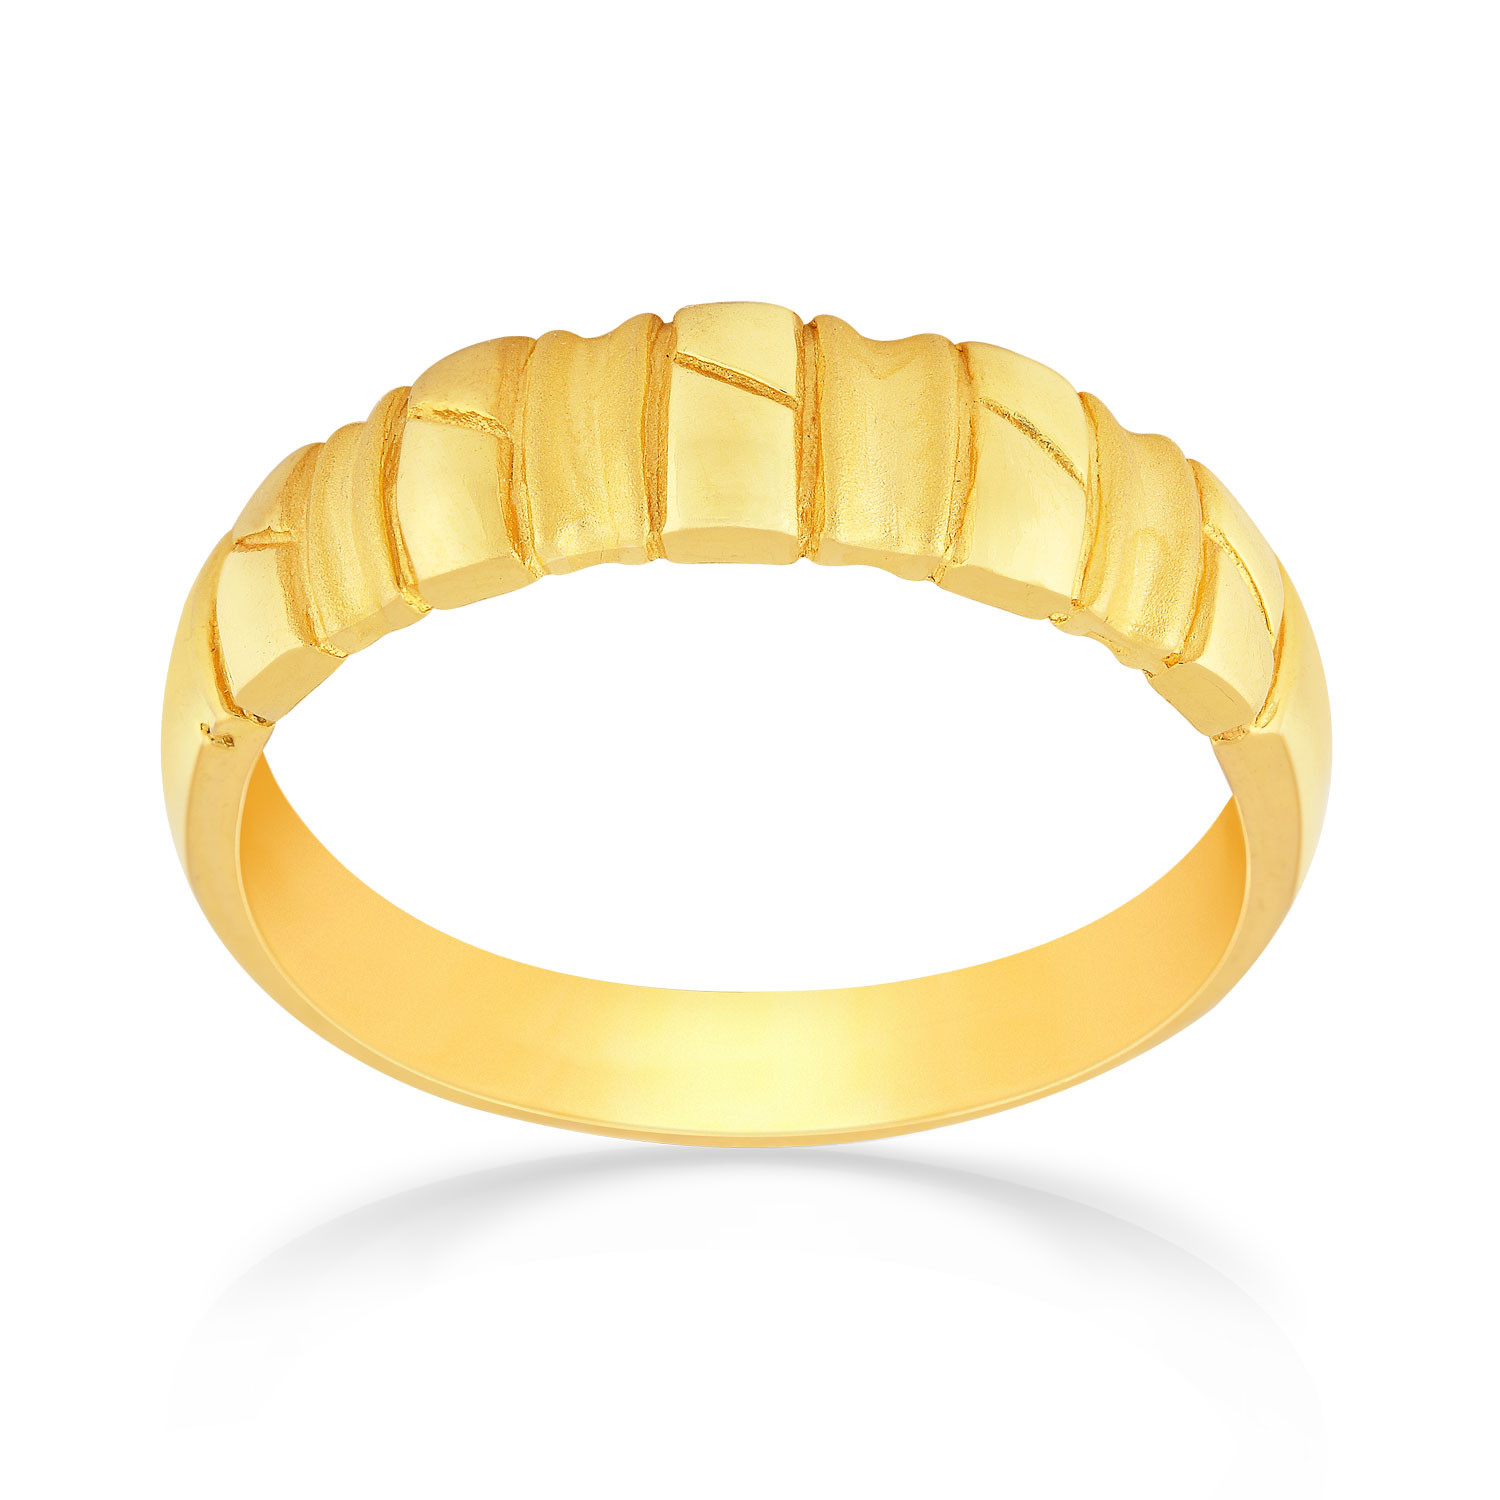 Malabar Gold Ring MHAAAAAAEOMY